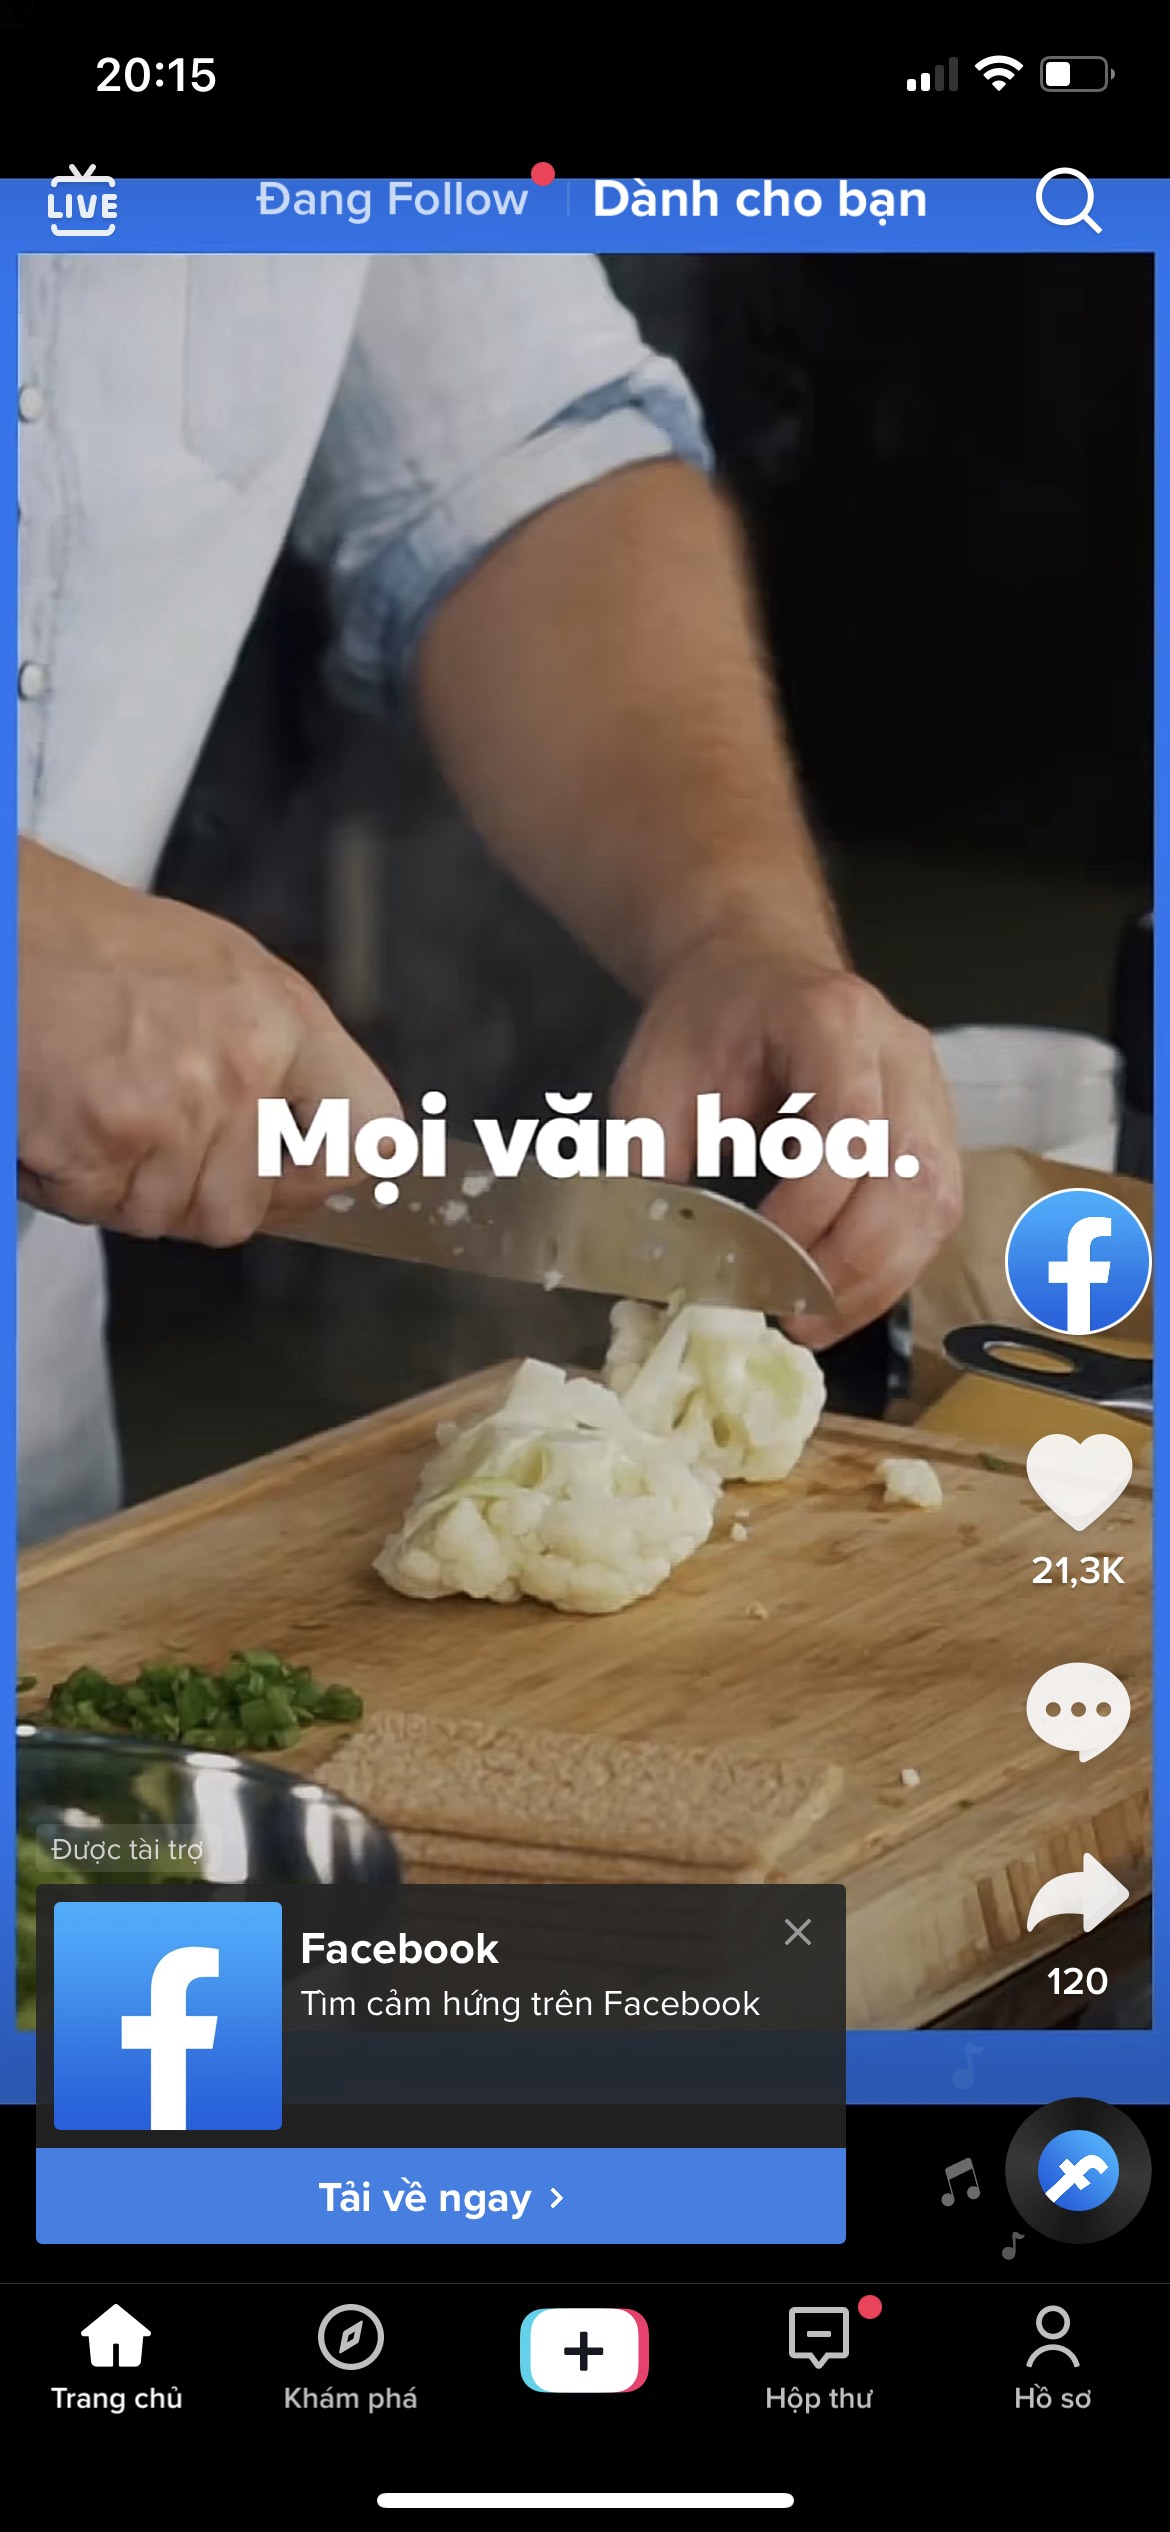 Hình thức In-feed ads trên Tiktok